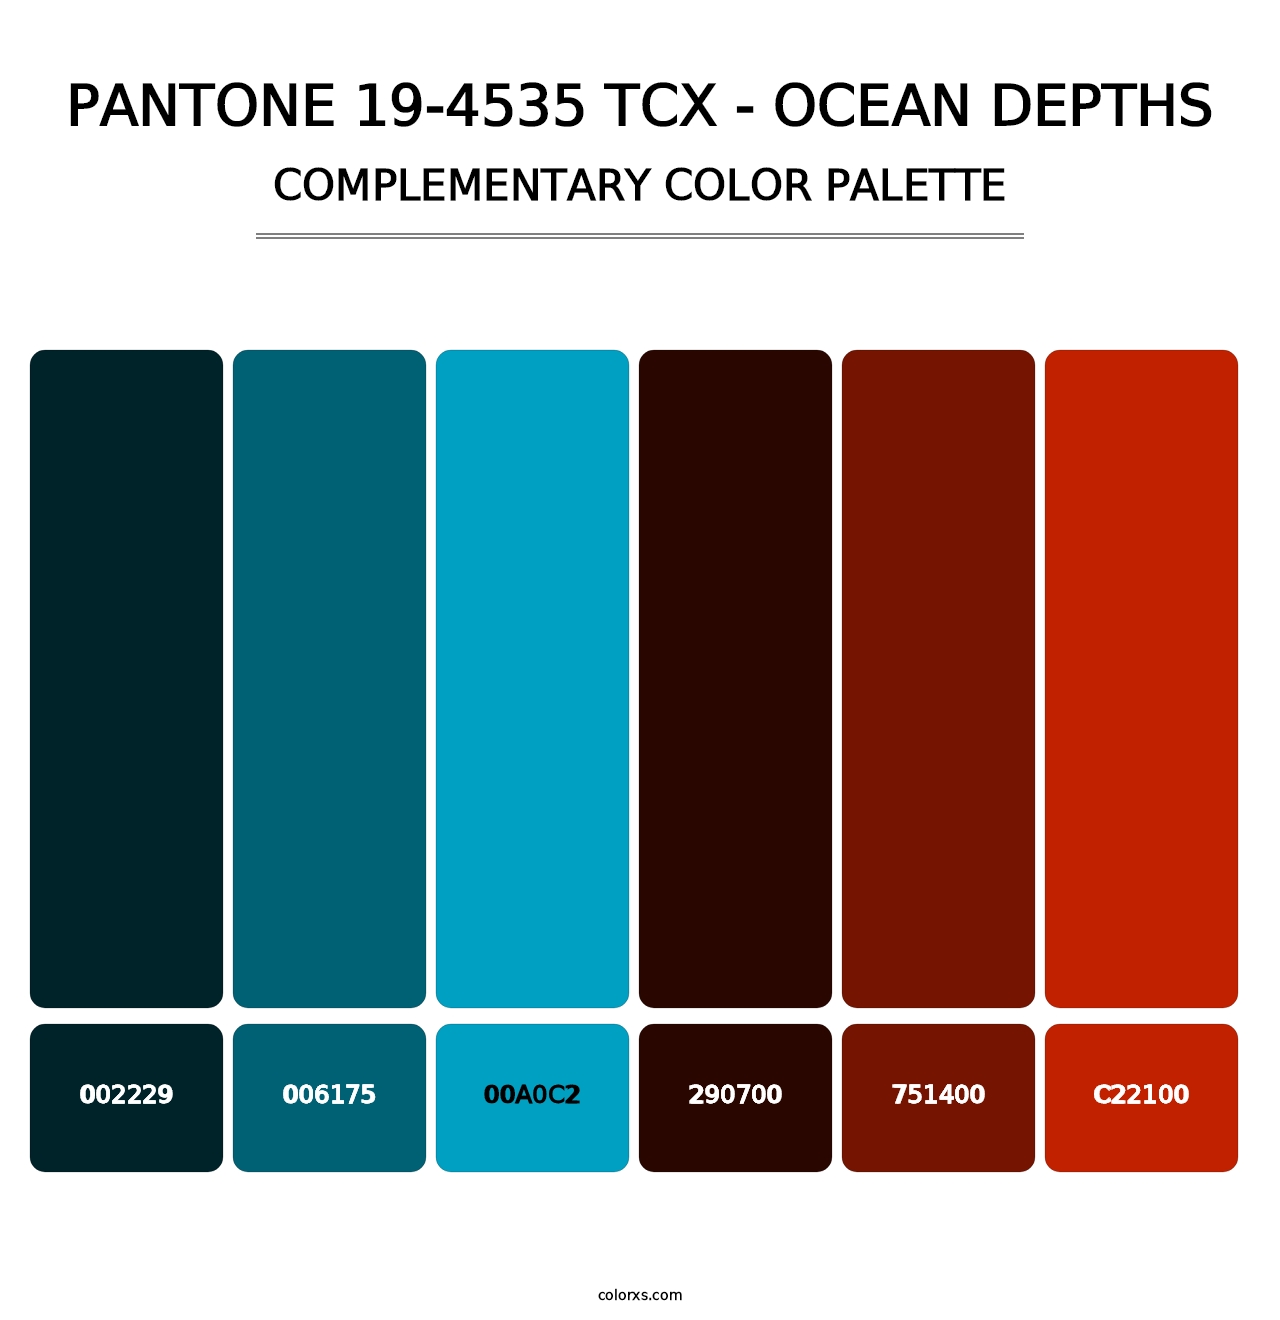 PANTONE 19-4535 TCX - Ocean Depths - Complementary Color Palette